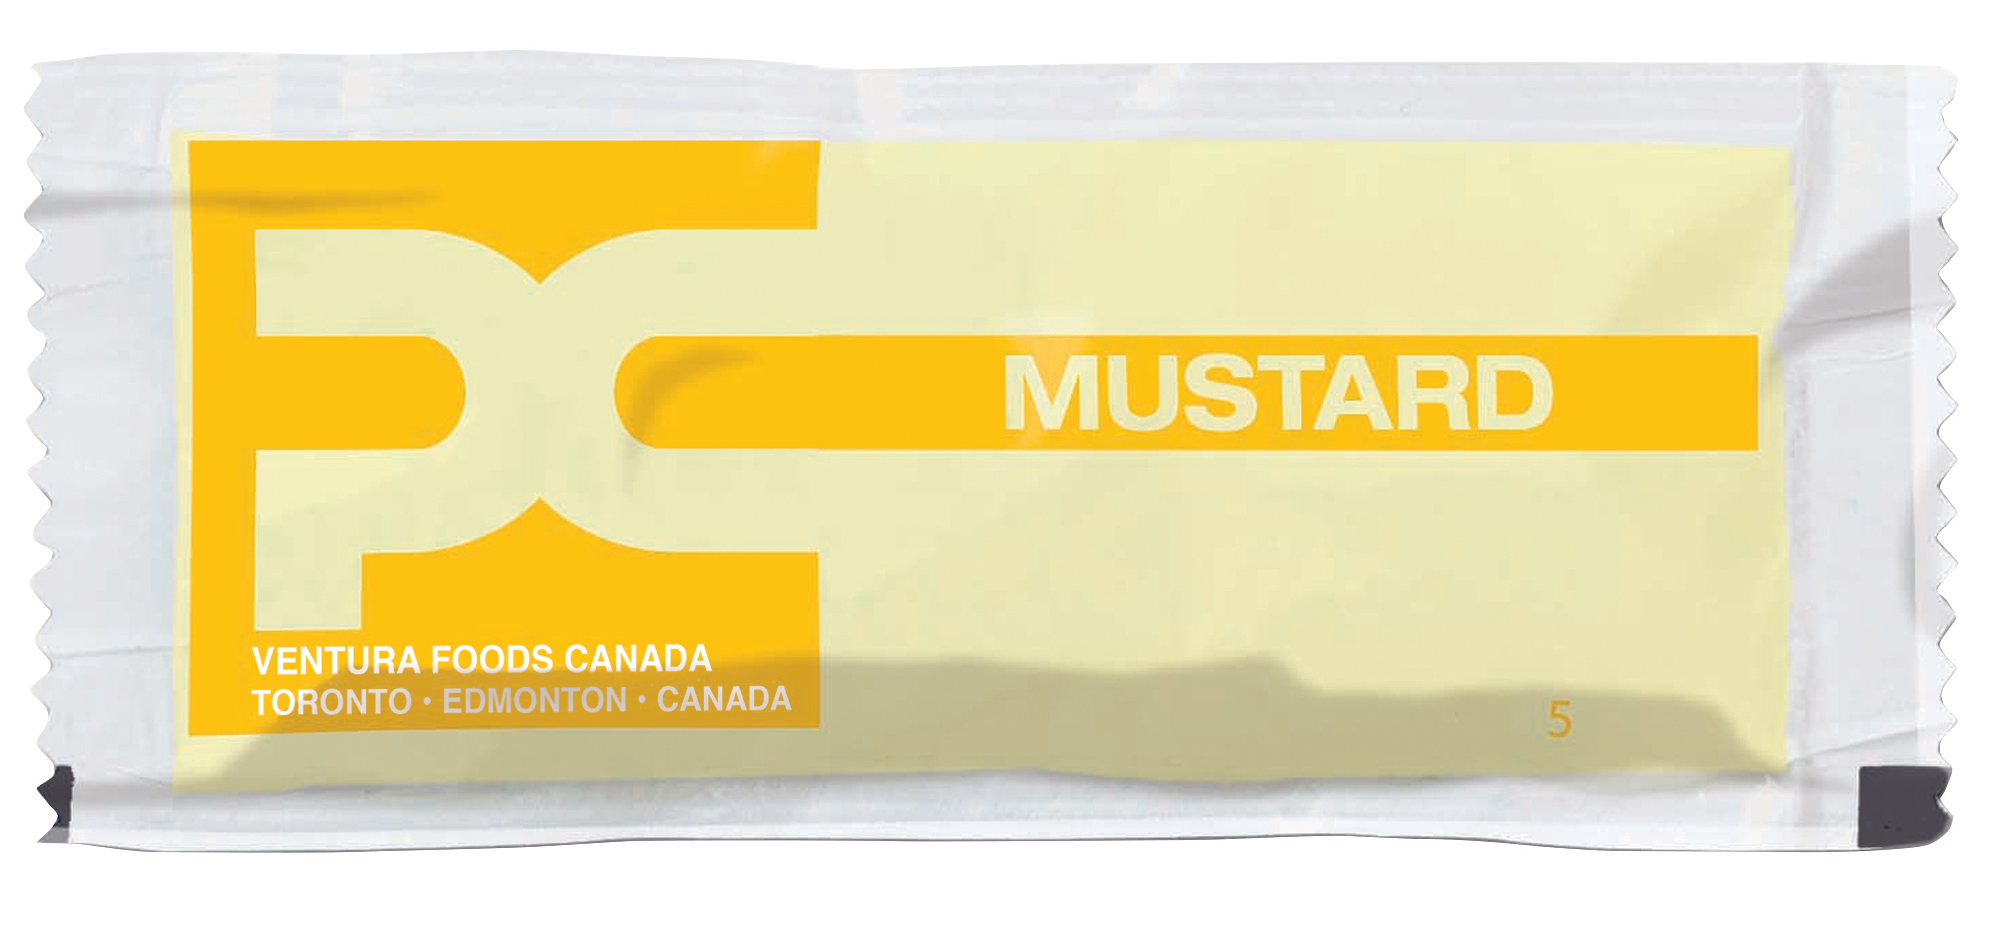 Ventura Foods Mustard Portions
7g 500/Box